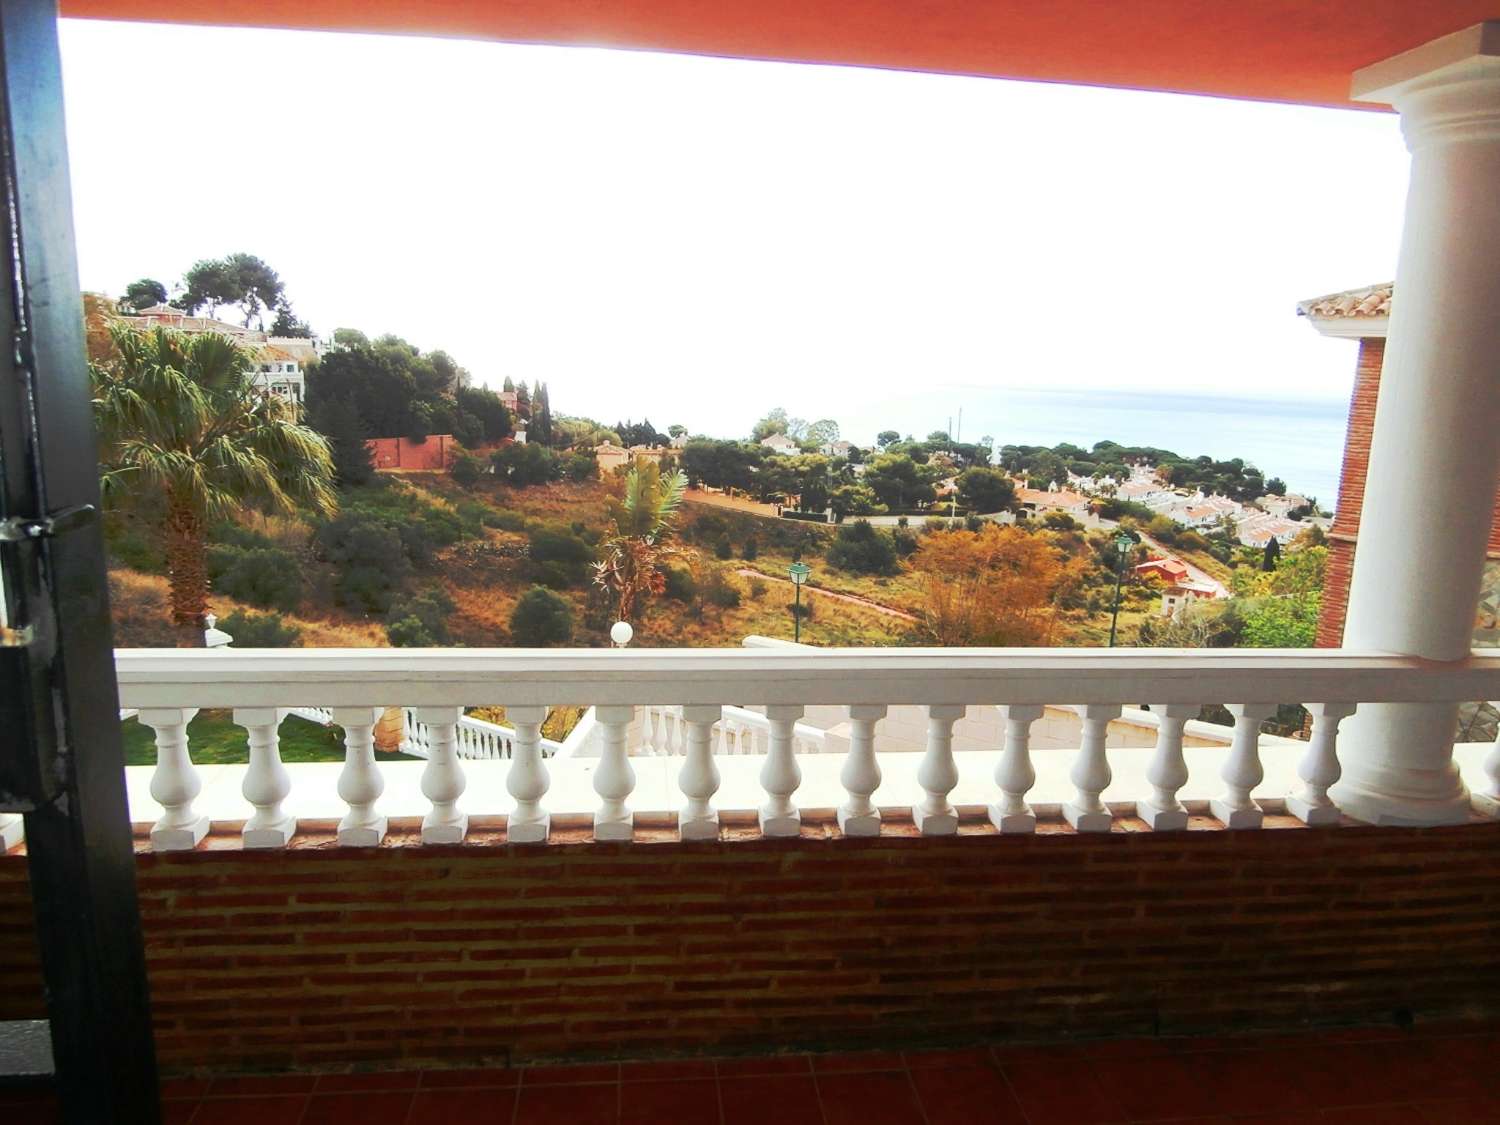 Exclusiva villa independiente con excelentes vistas al mar, situada en una de las mejores zonas residenciales de Benalmadena, La Capellania.